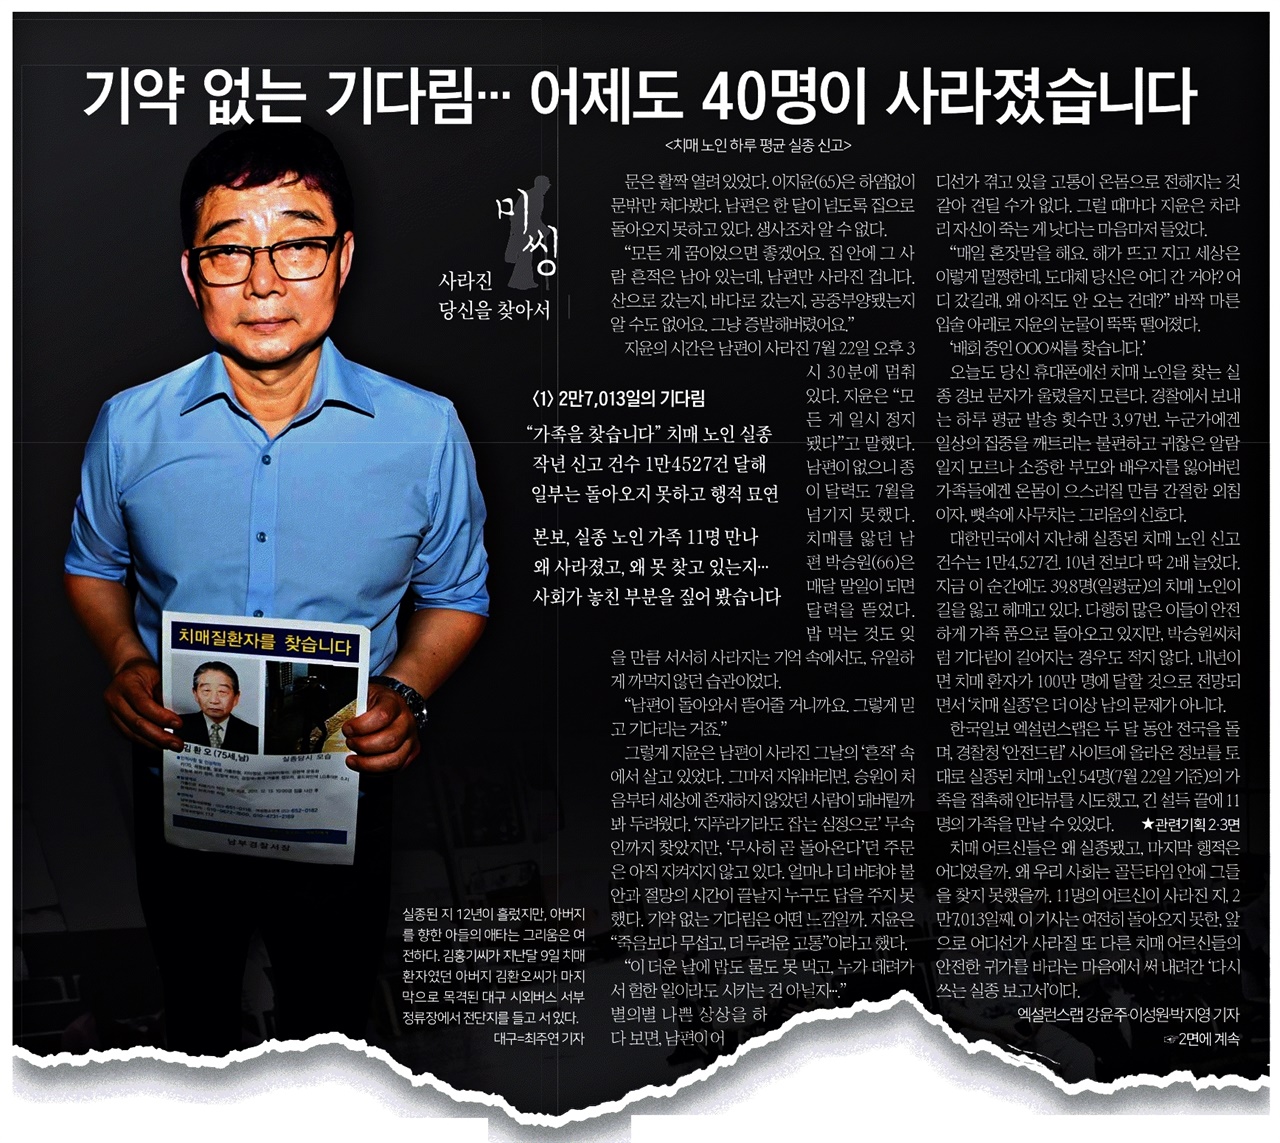 한국일보 ‘미씽:사라진 당신을 찾아서’의 실종자 가족 인터뷰 기사